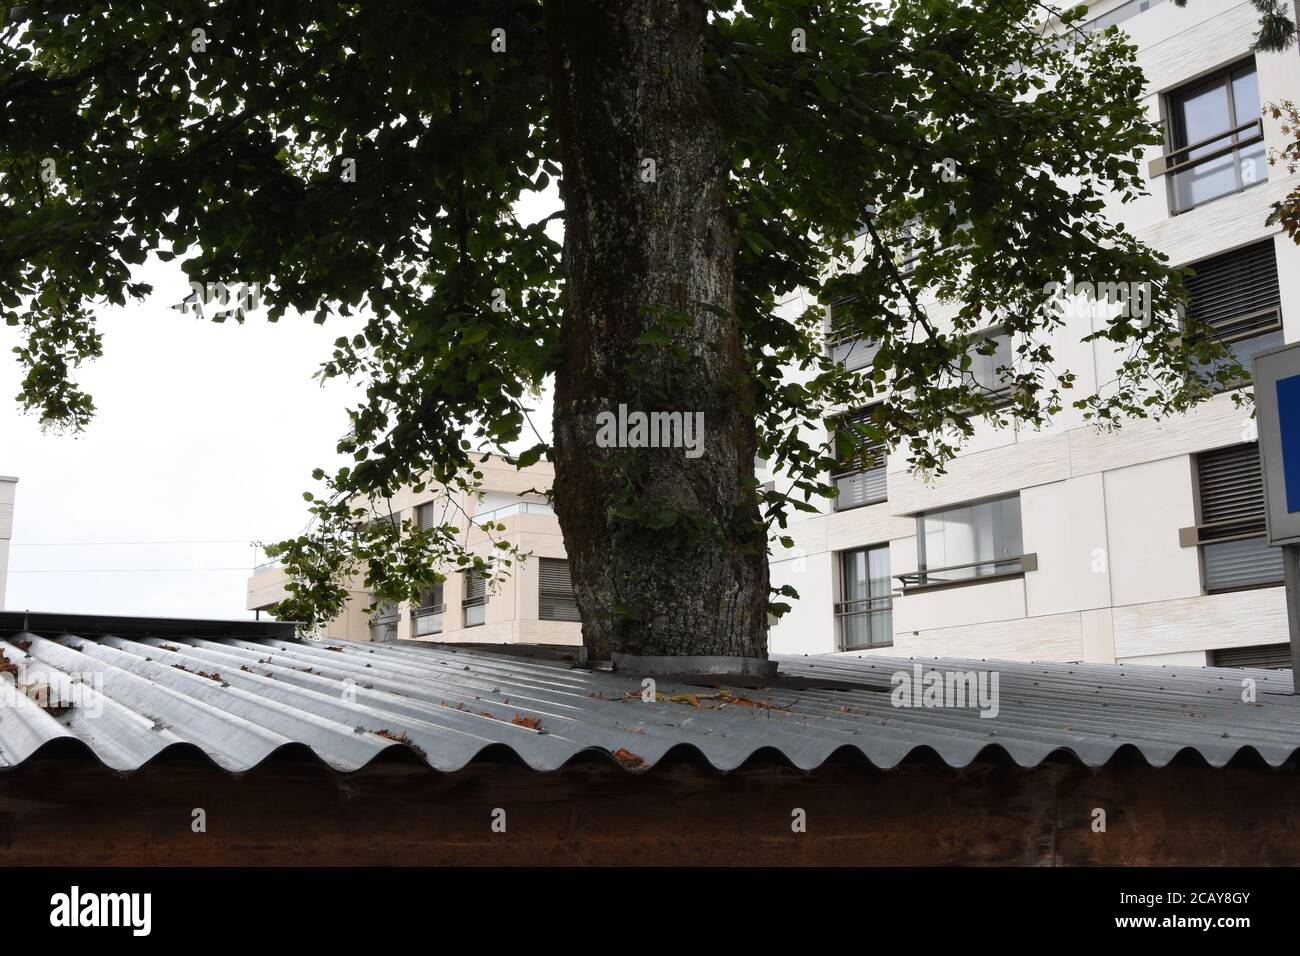 Tronc épais d'arbre à feuilles larges qui pousse à travers un toit en fonte ondulée à Uitikon, canton de Zurich, en Suisse. Maison en arrière-plan avec balcon. Banque D'Images